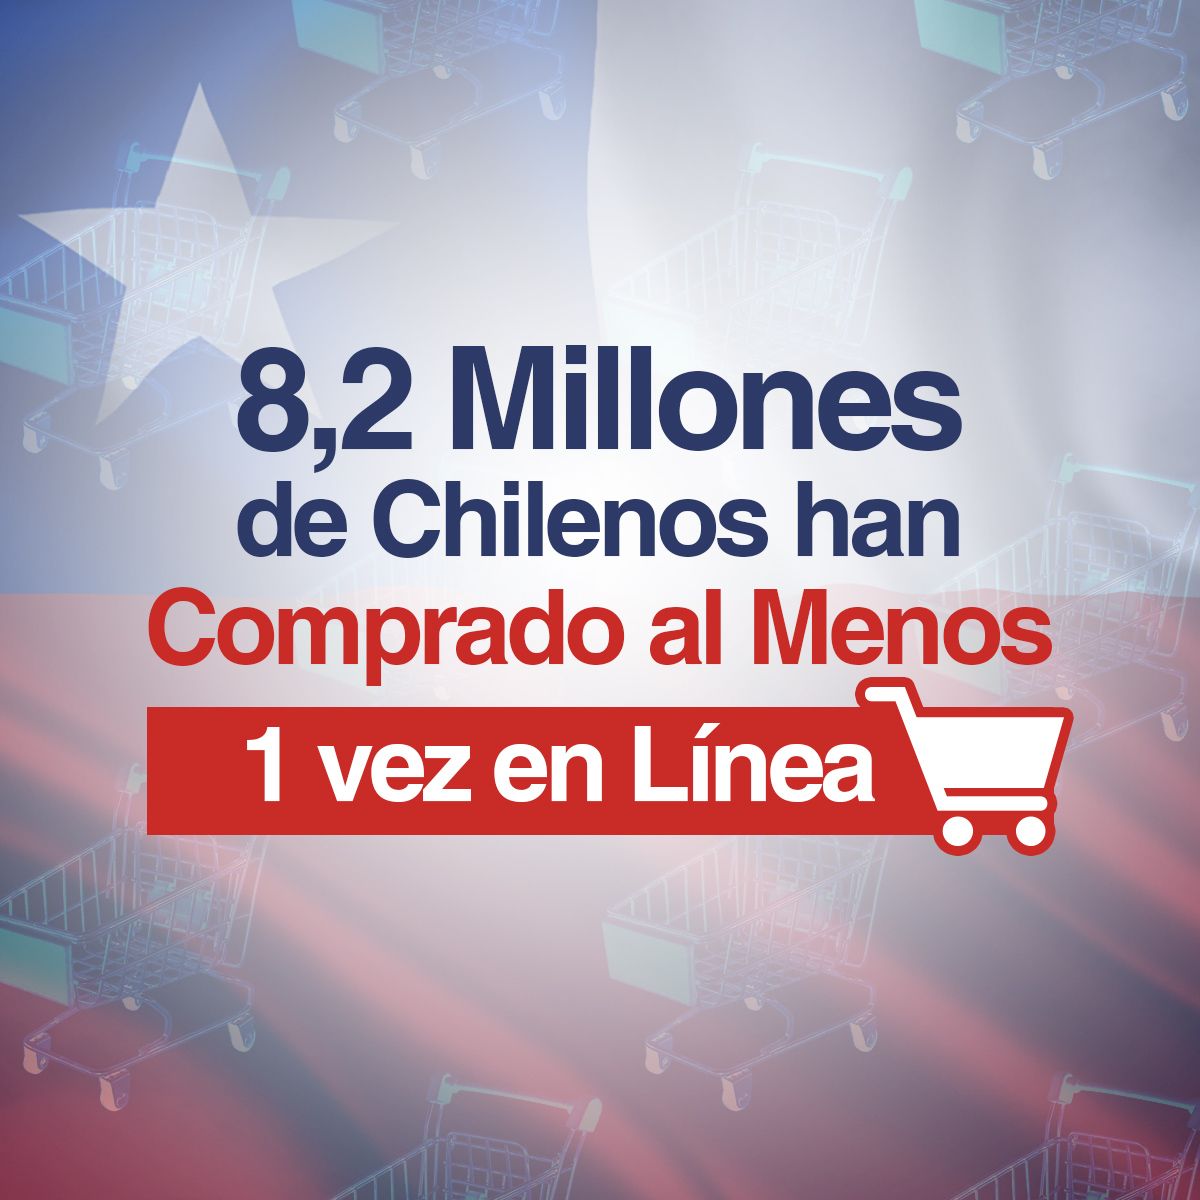 8,2 Millones de Chilenos han Comprado al Menos 1 vez en Línea